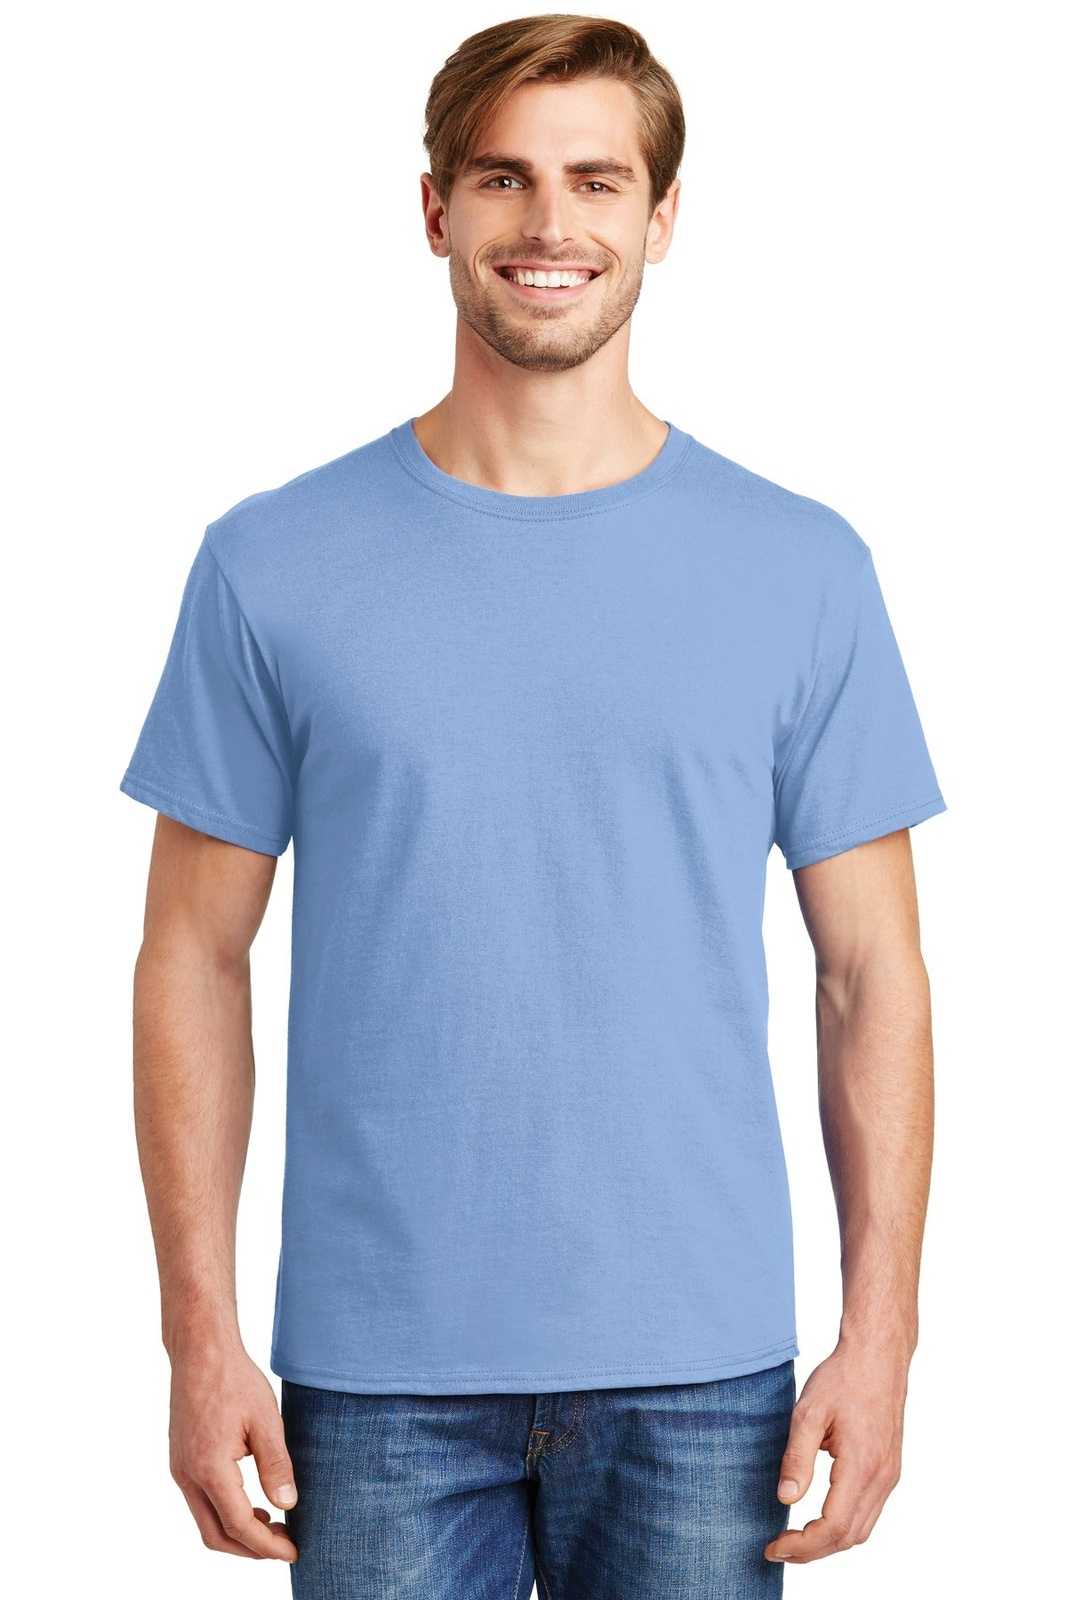 Hanes 5280 Comfortsoft 100% Cotton T-Shirt - Light Blue - HIT a Double